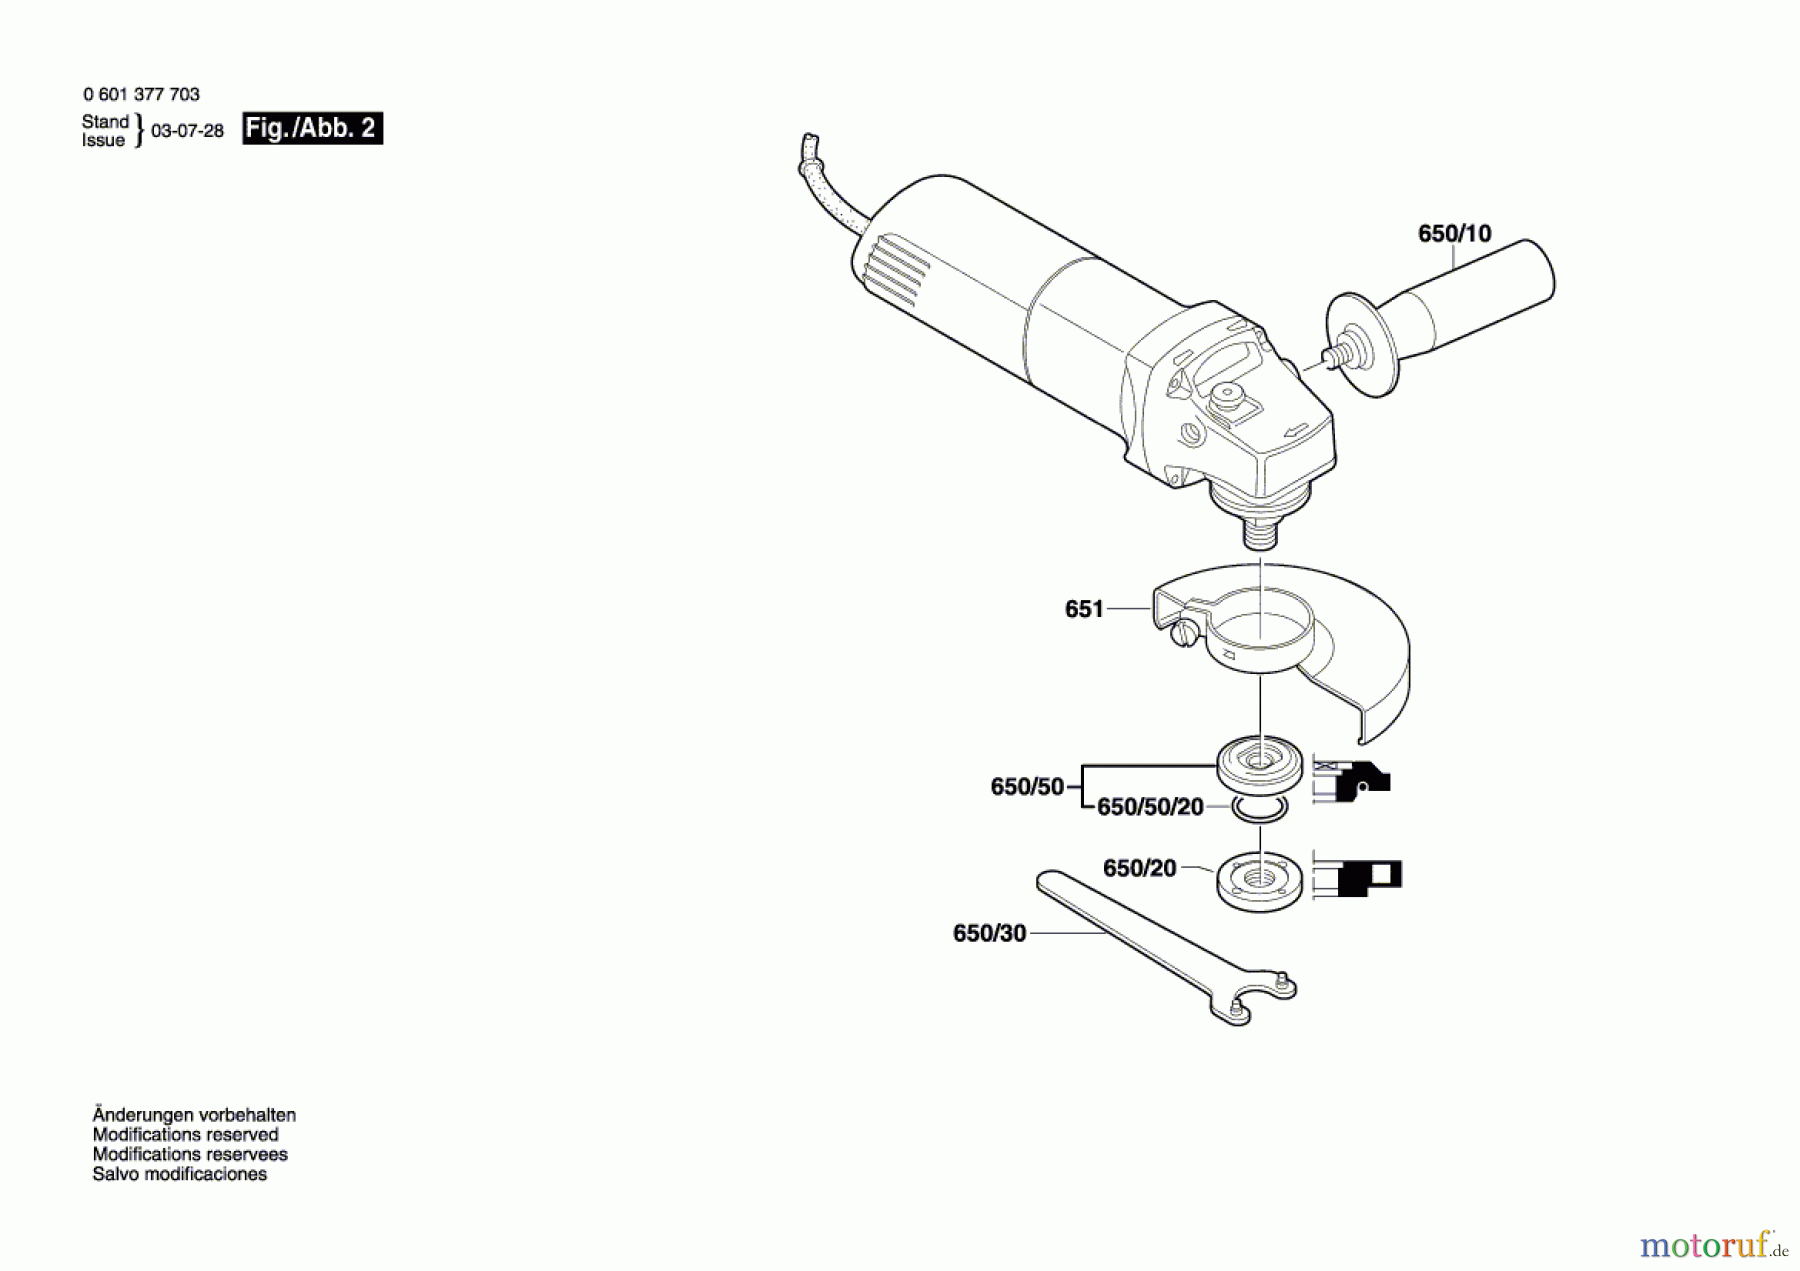  Bosch Werkzeug Winkelschleifer GWS 850 C Seite 2